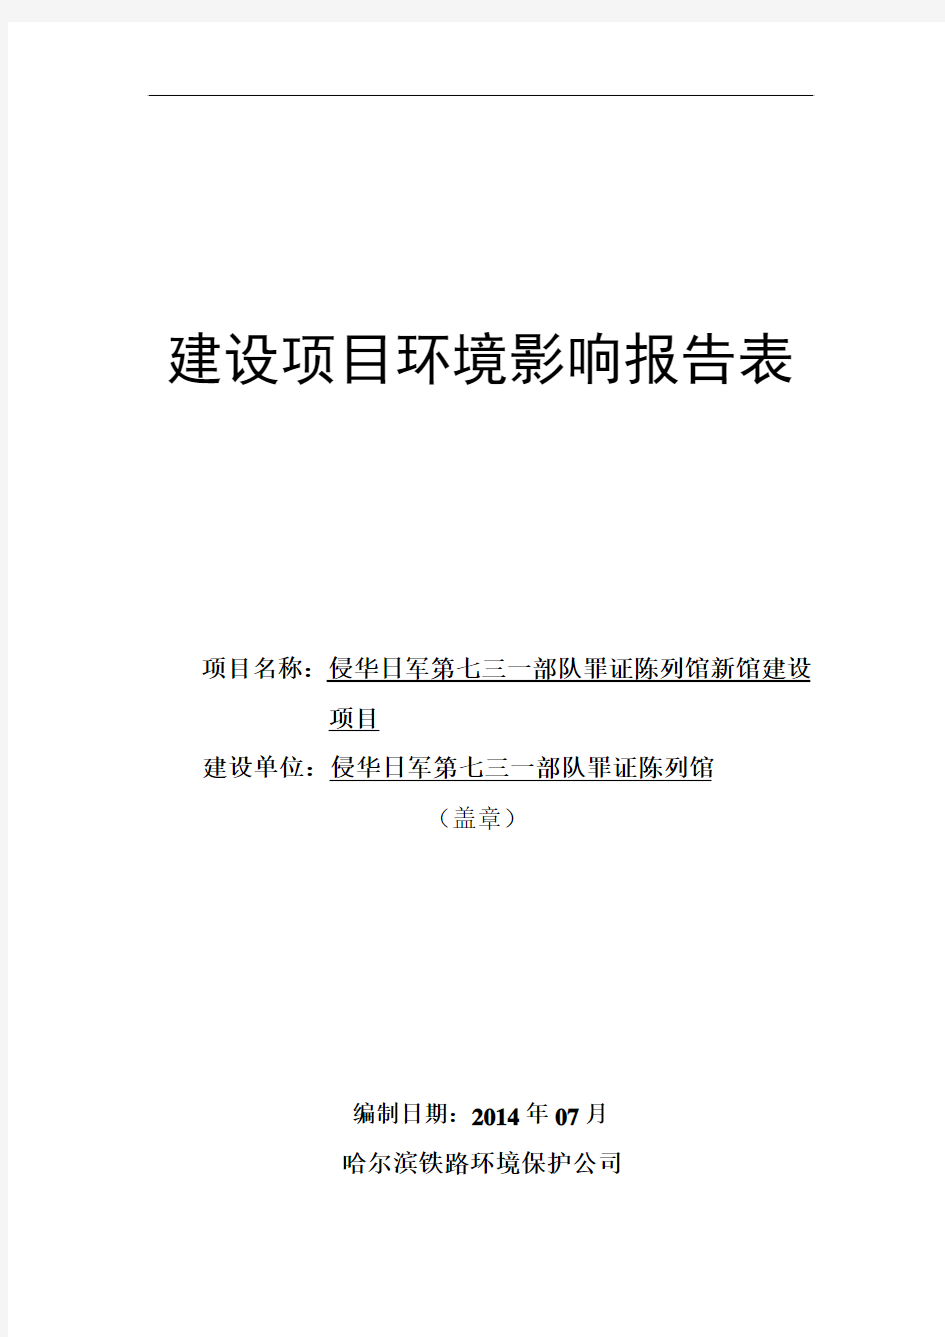 侵华日军第七三一部队罪证陈列馆新馆建设项目环境影响报告表